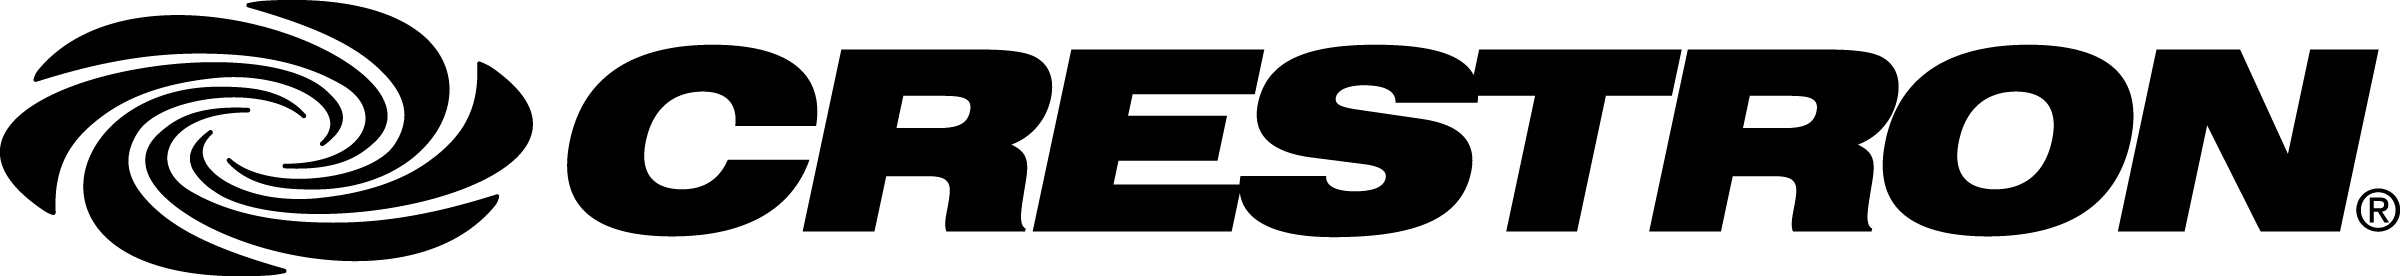 File:Crestron logo black.png